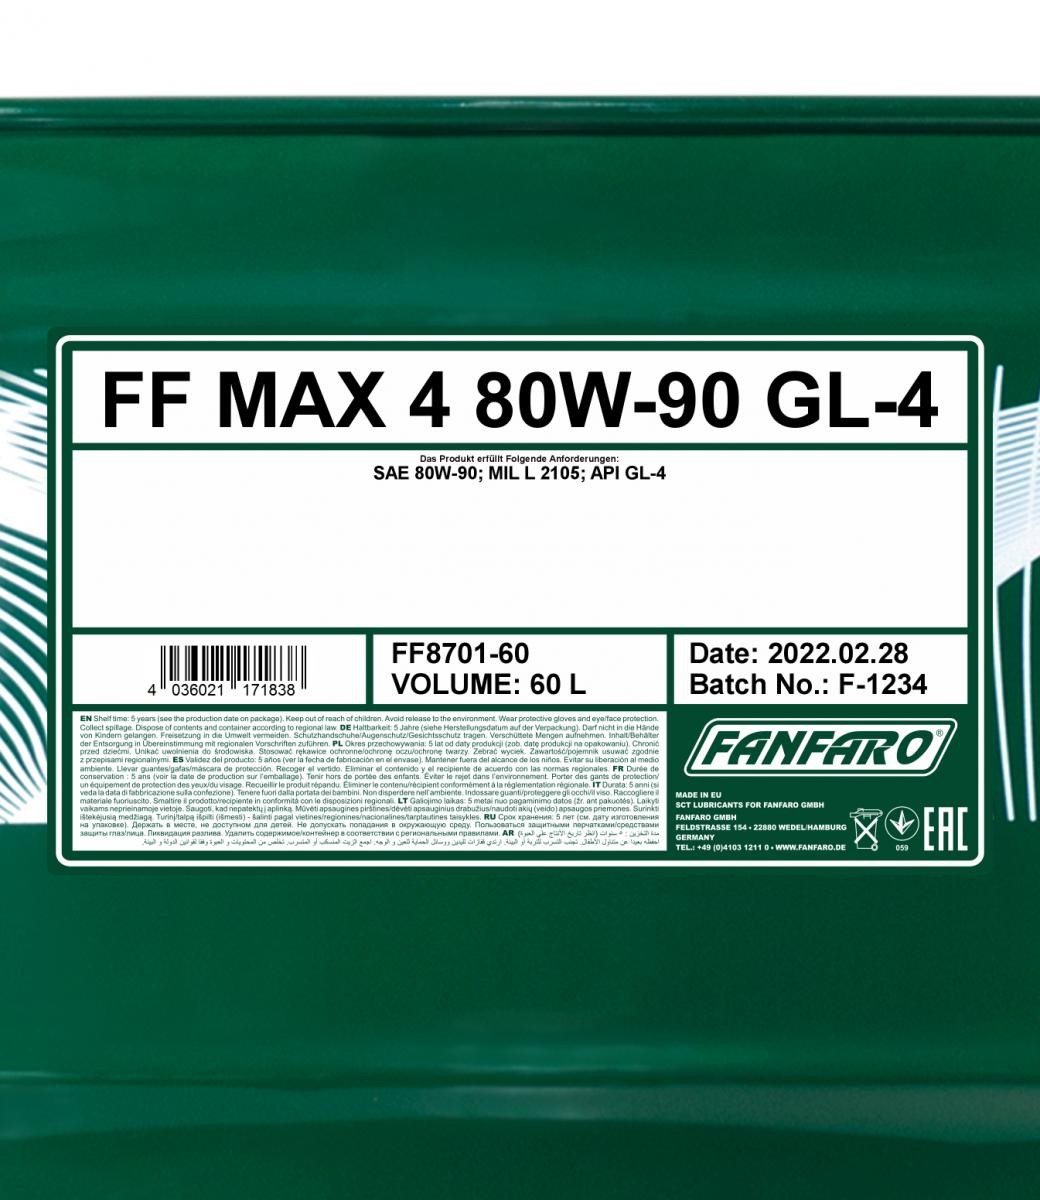 FANFARO Versnellingsbakolie FF8701-60